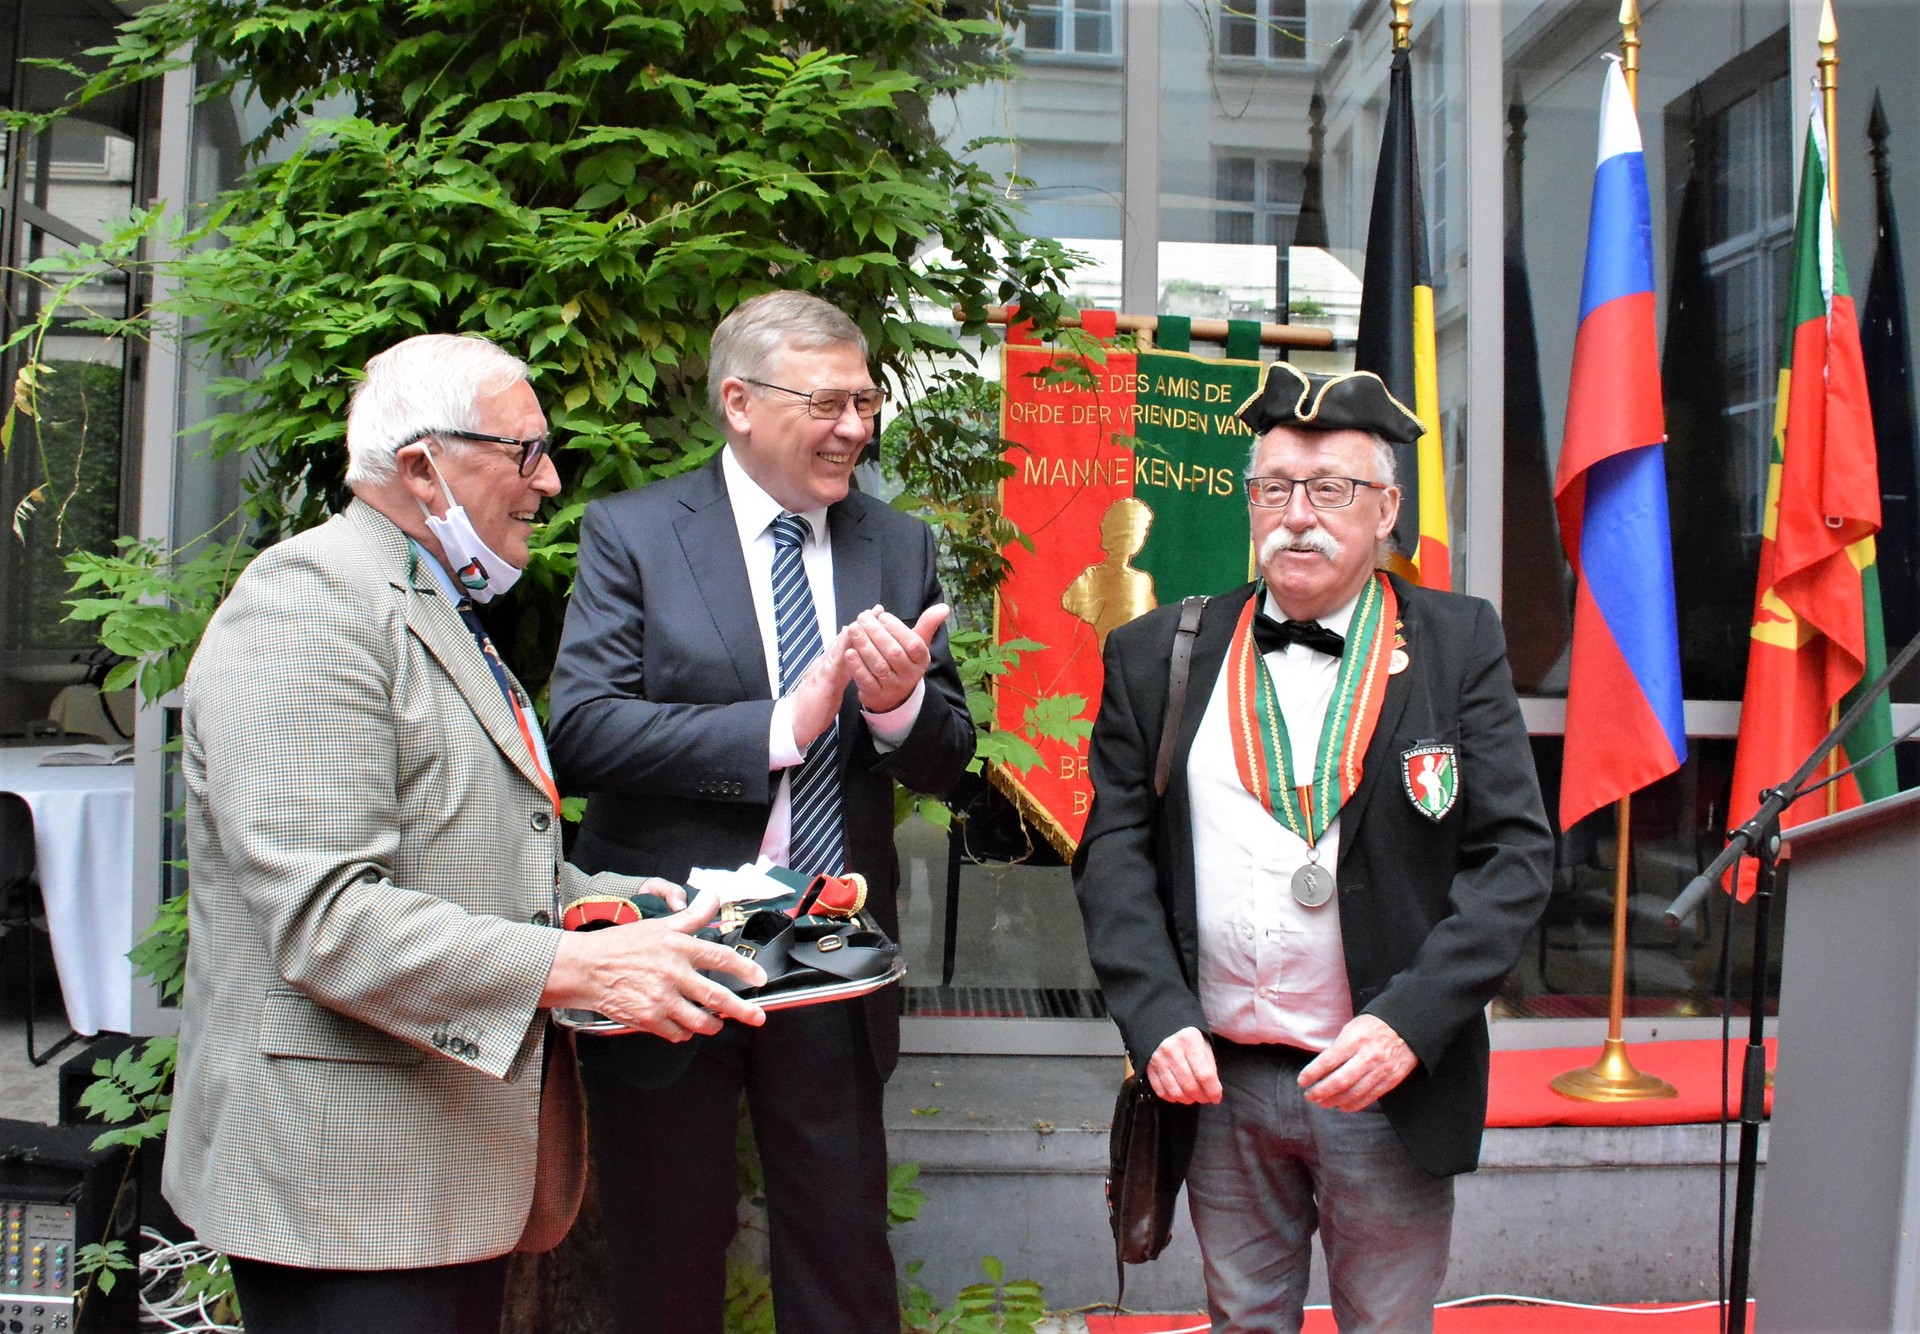 Remise de la tenue par son excellence monsieur l’ambassadeur de Russie en Belgique Alexander Tokovinin (au centre sur la photo)